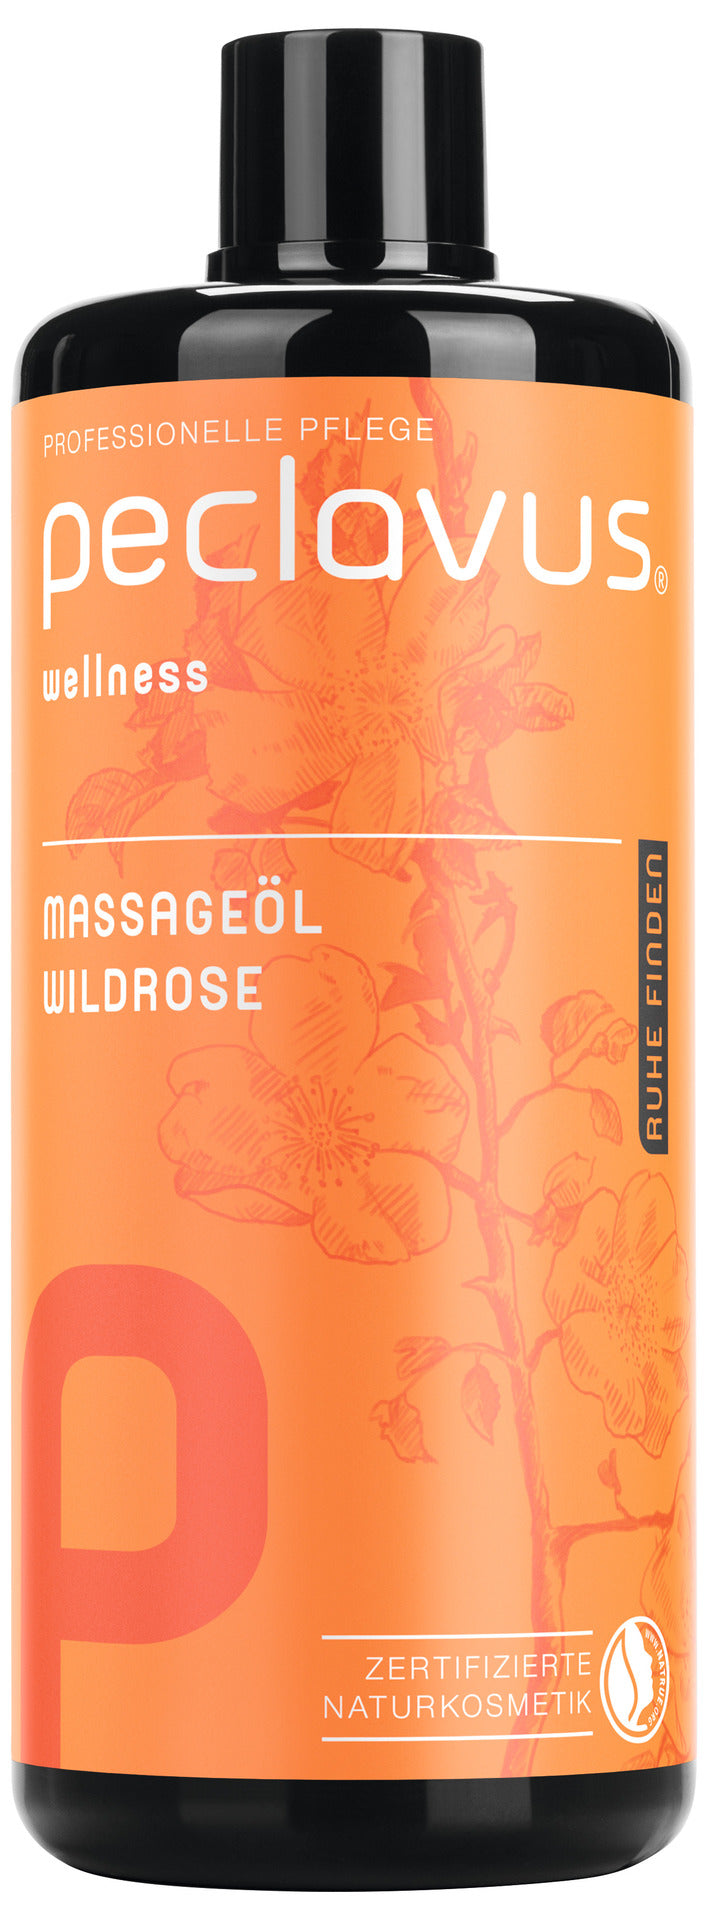 Huile de massage - Rose sauvage - 500 ml - Peclavus